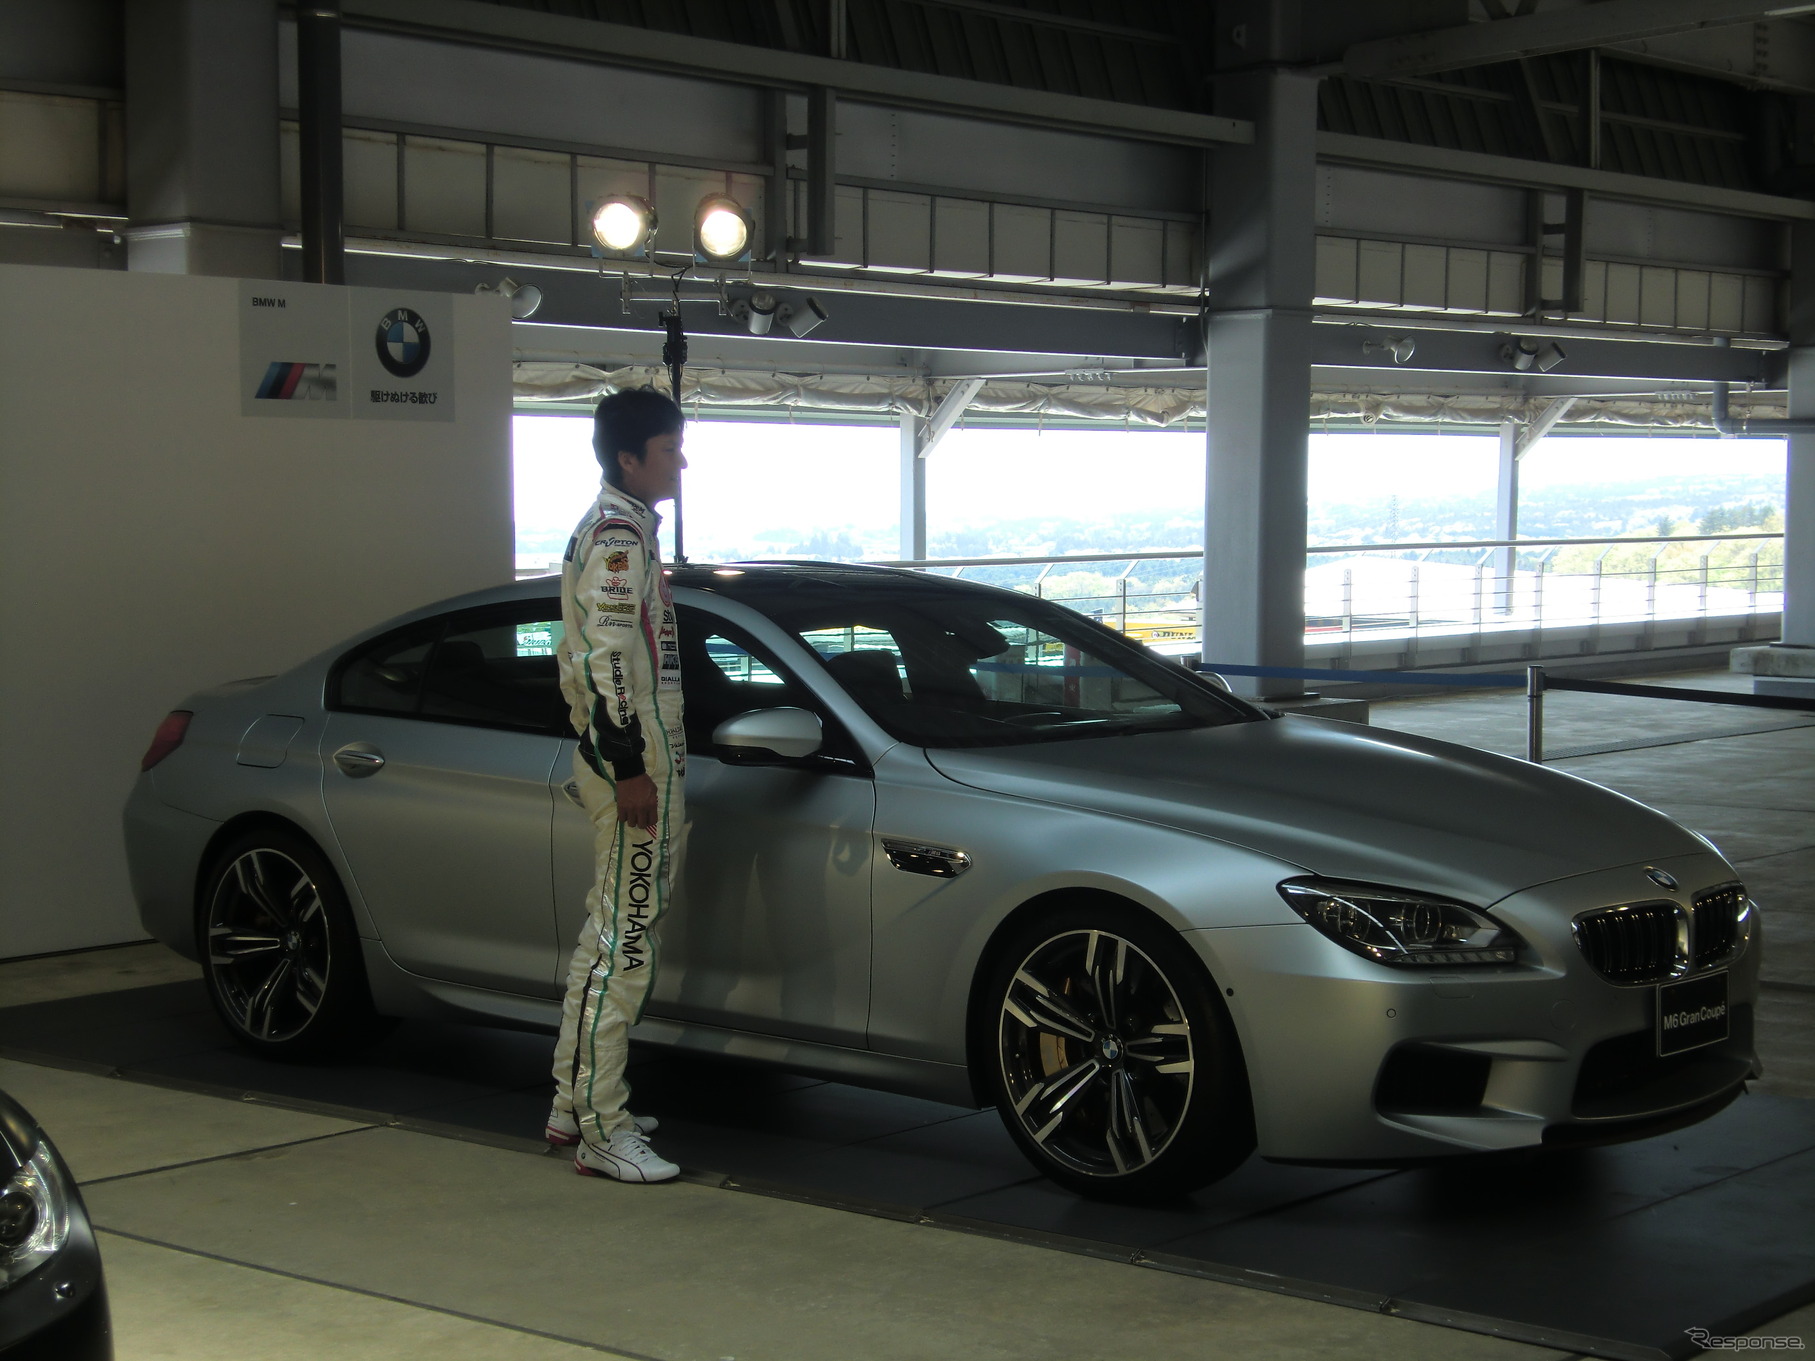 SUPER GTのレース会場で日本初お披露目となったBMW M6グラン クーペ。脇に立つ谷口信輝は、BMW Z4で2011年にGT300王者となった経歴も持つ。